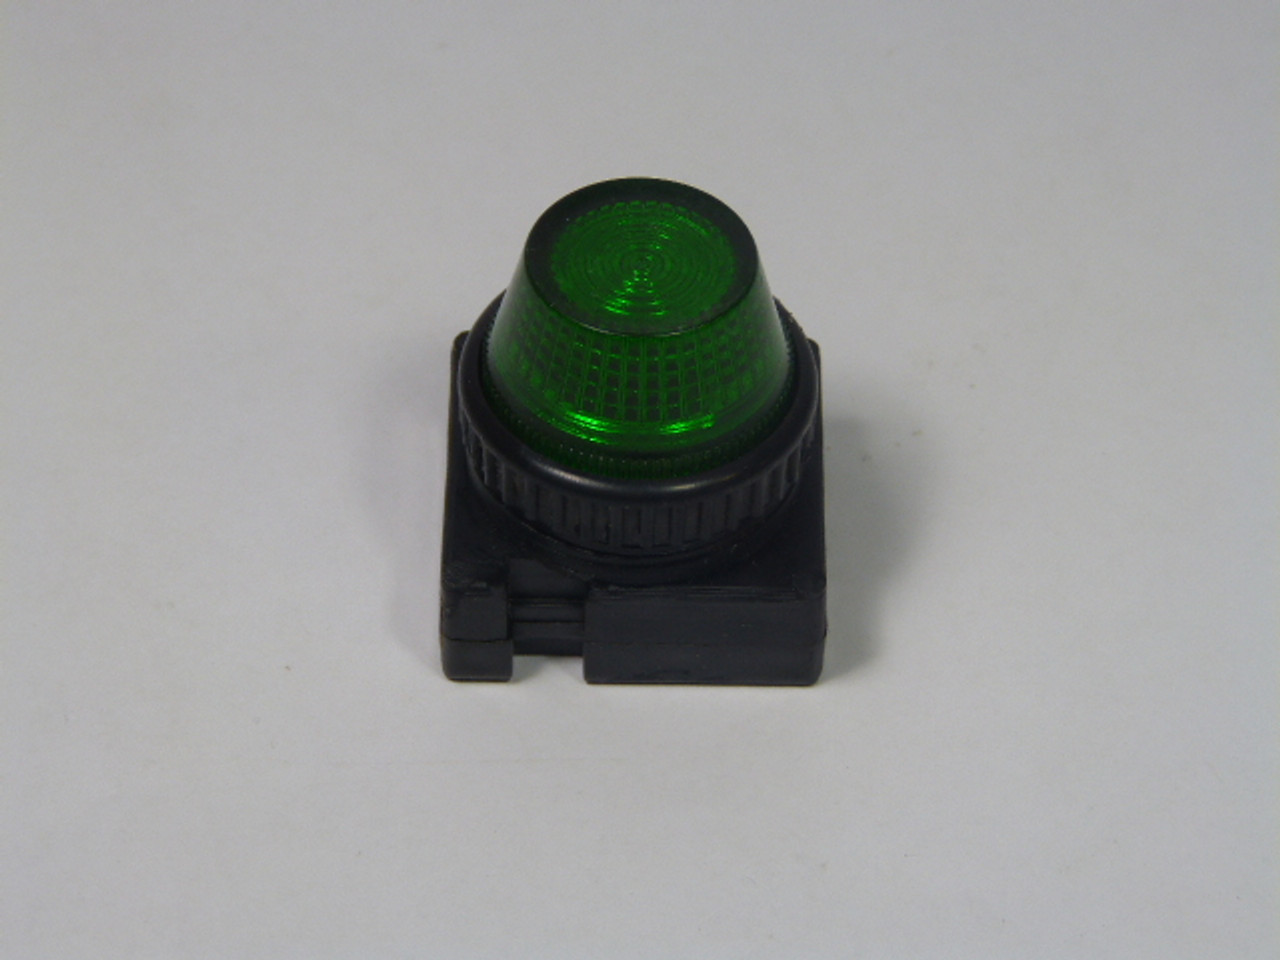 C3 FVLU24-PLLGN Pilot-Indicator Light 24V Green Lens USED